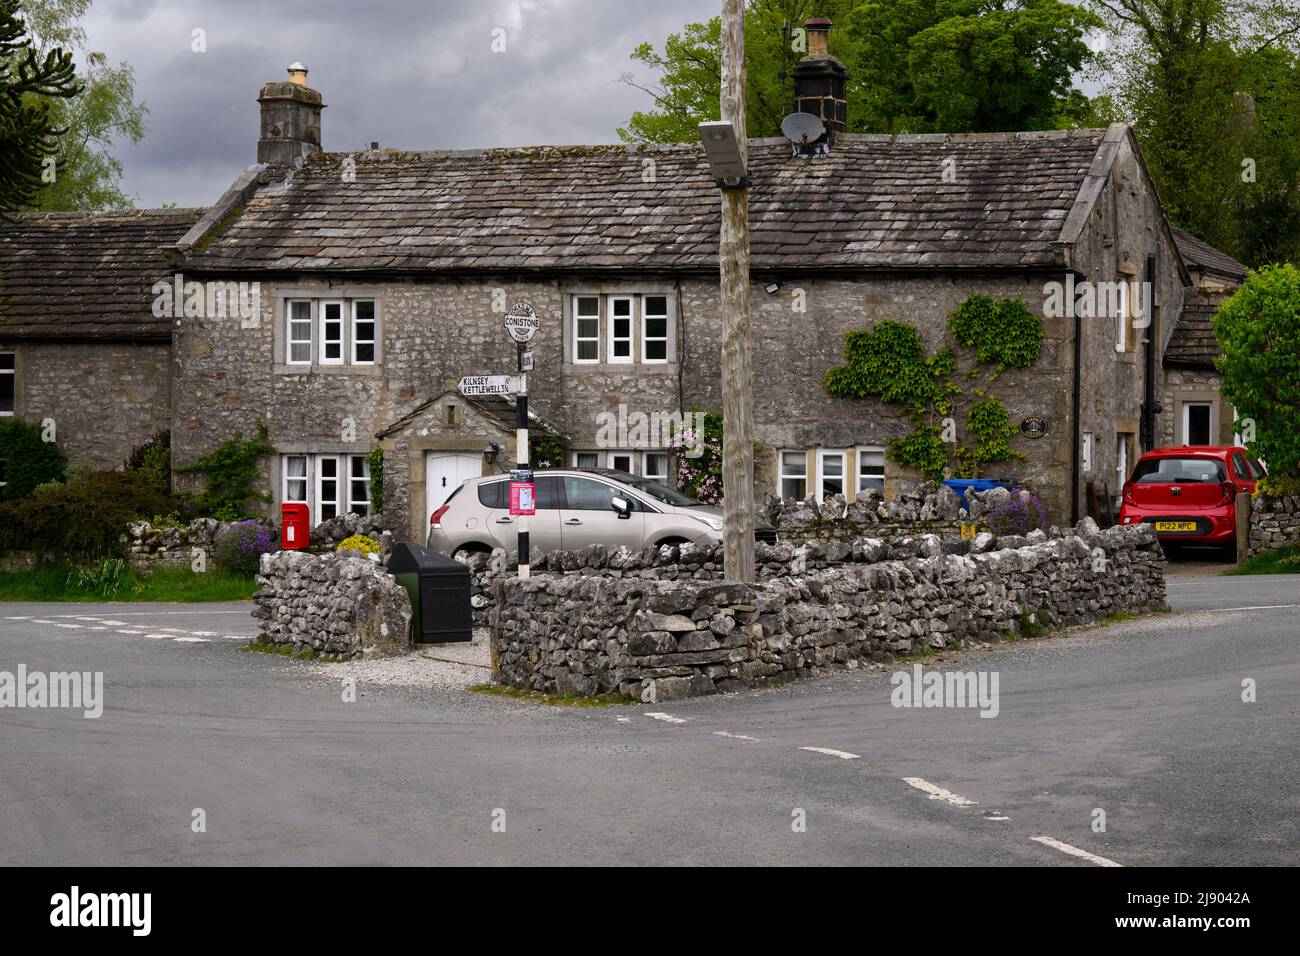 Ruhiges Dorfzentrum von Conistone (attraktive C18 Steingrundstücke, ummauerte Straßenkreuzung, Wegweiser) - Wharfedale, Yorkshire Dales, England, UK. Stockfoto